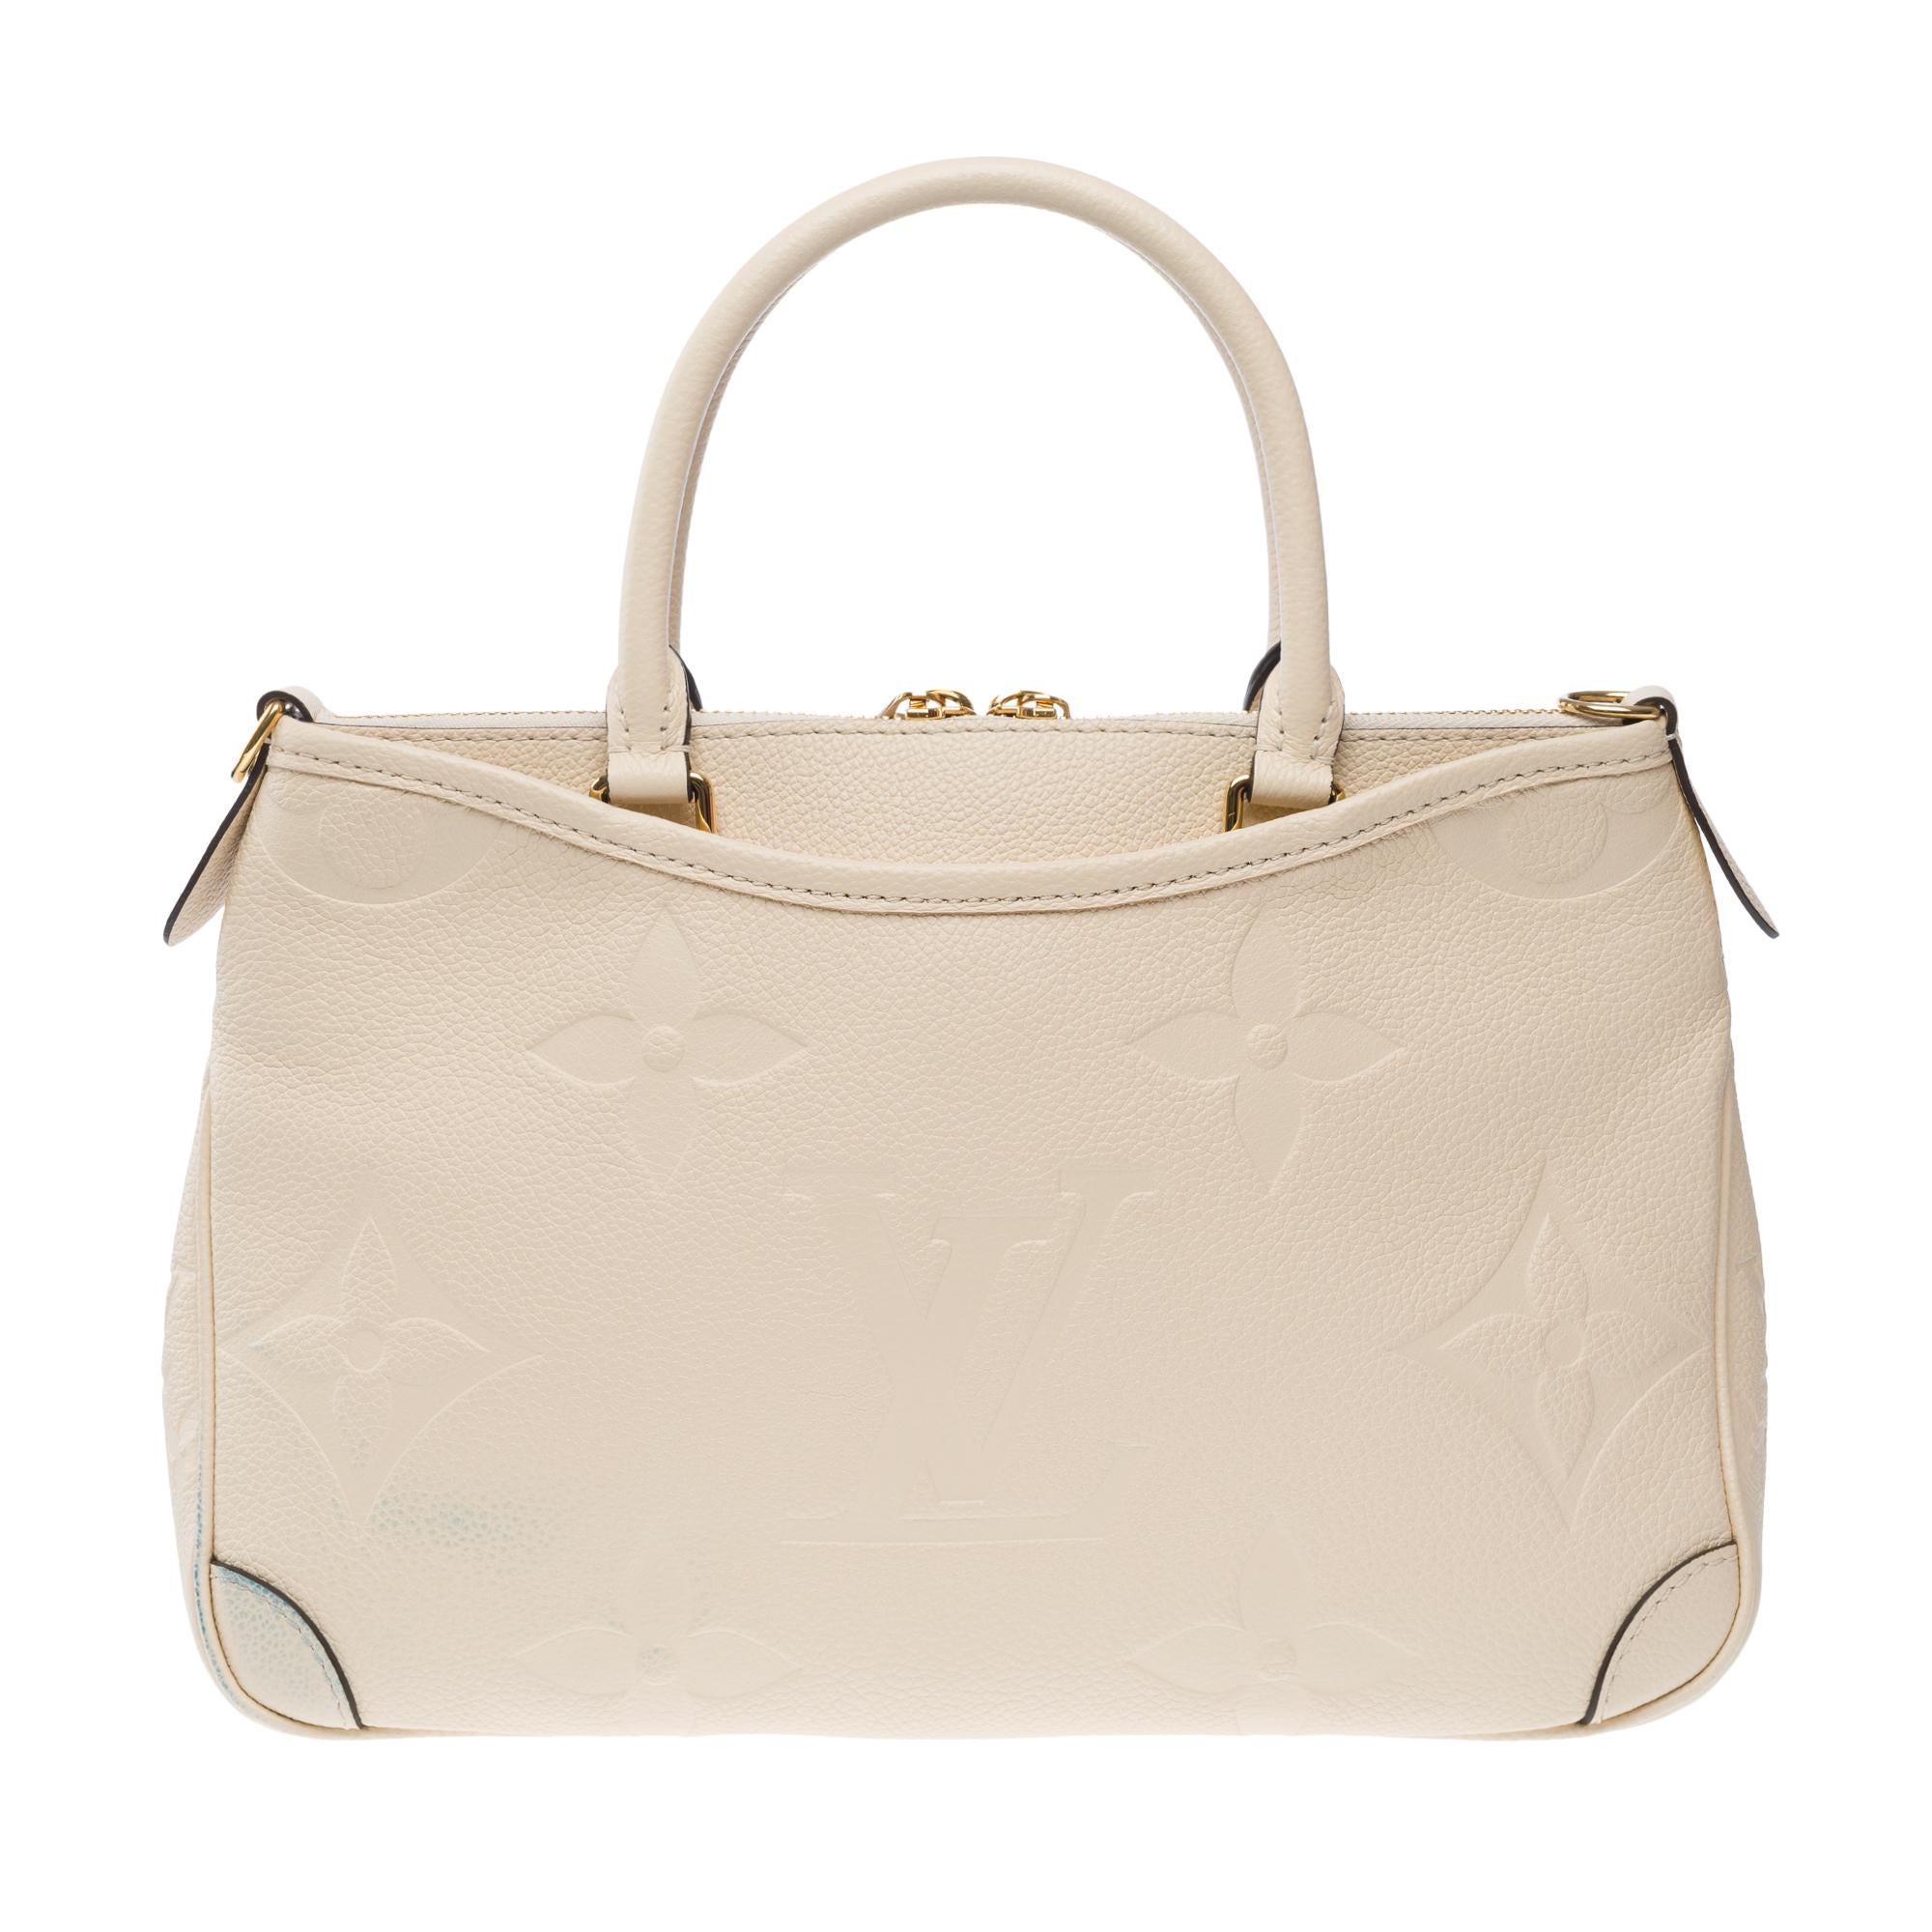 Women's Louis Vuitton Trianon PM handbag strap in Cream White monogram calf leather, GHW For Sale